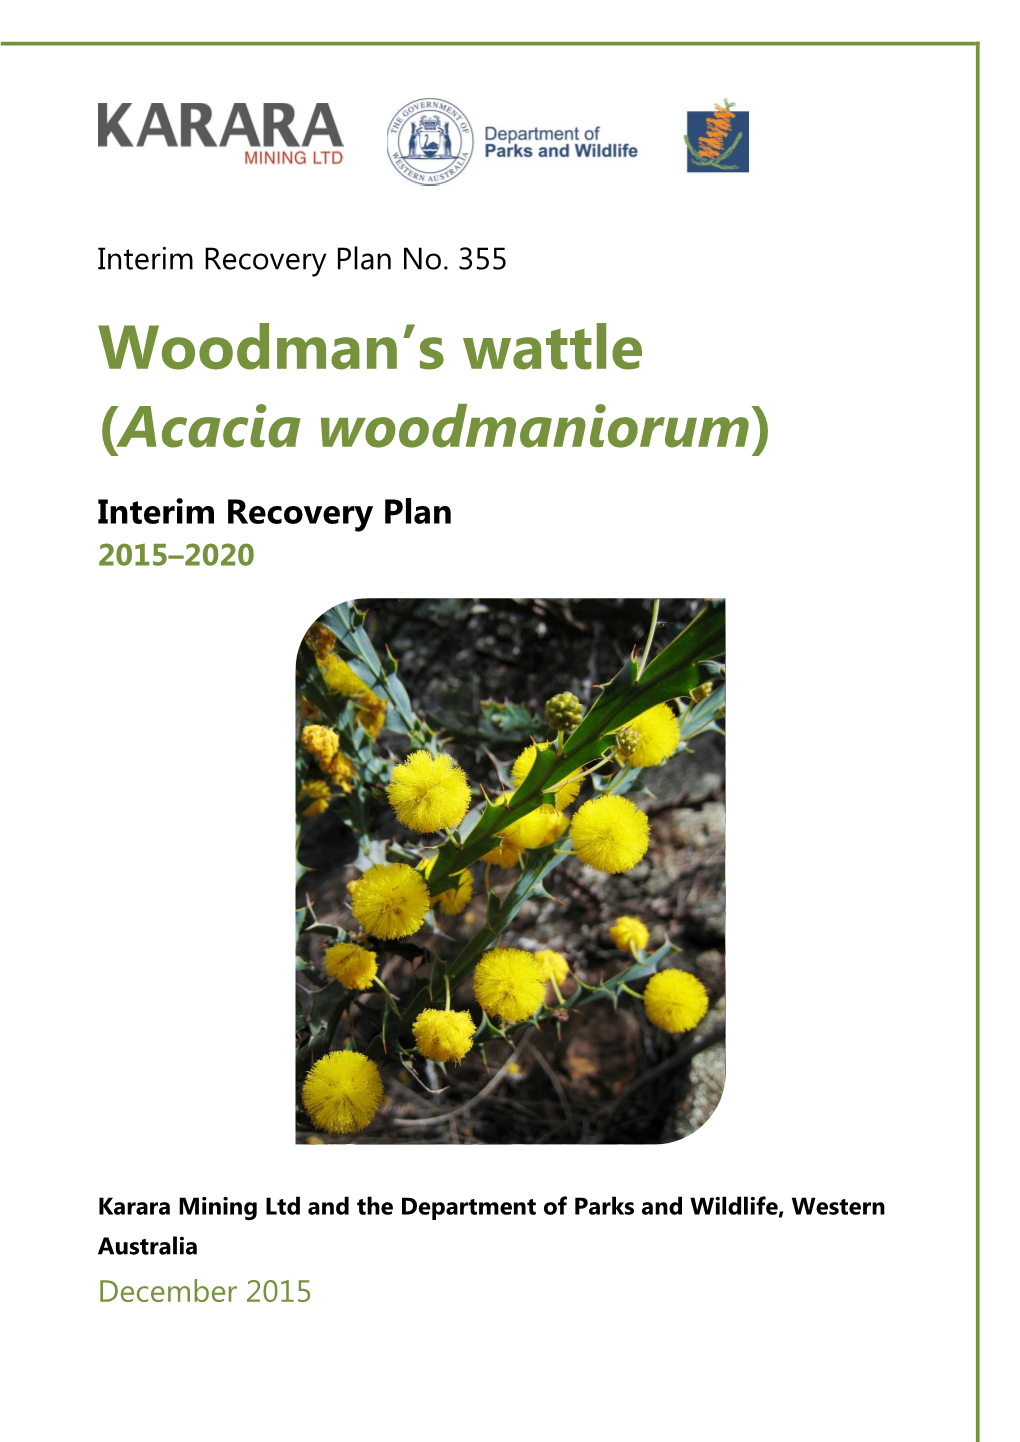 Acacia Woodmaniorum)